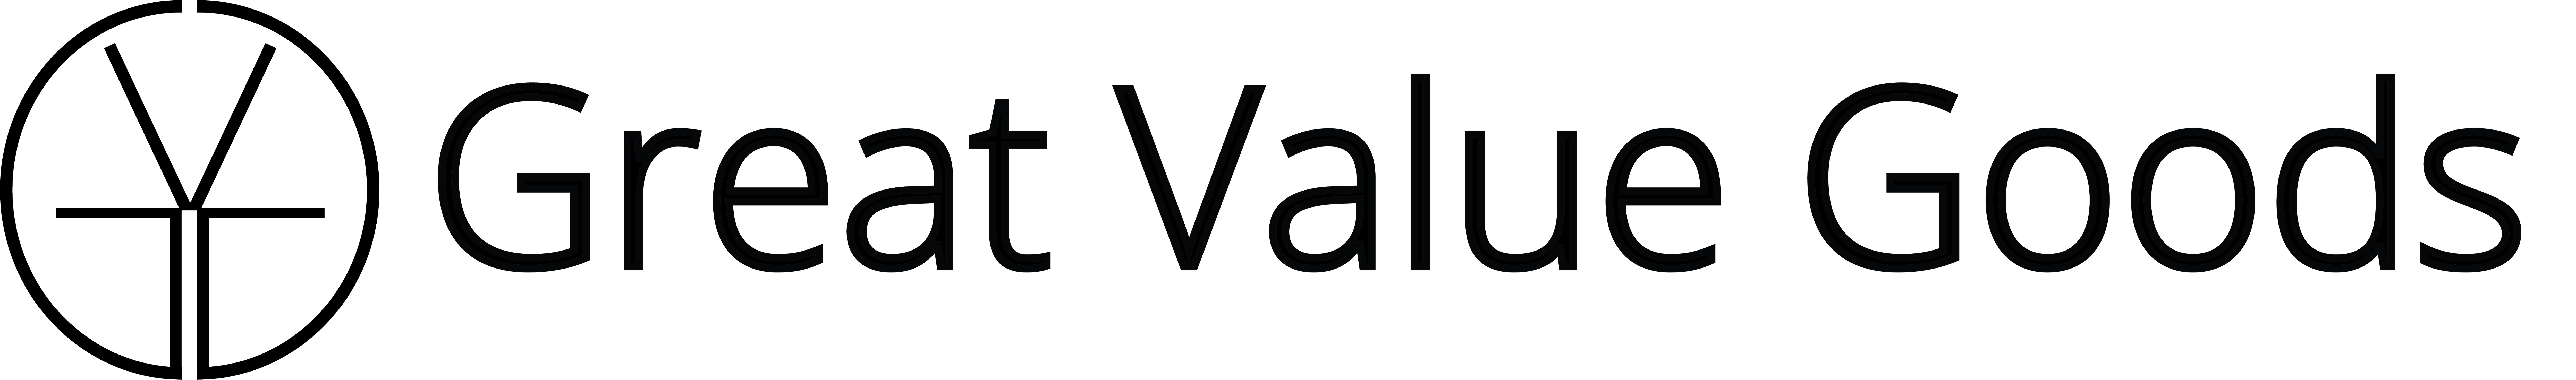 Vector de gran valor logo PNG imagen de alta calidad